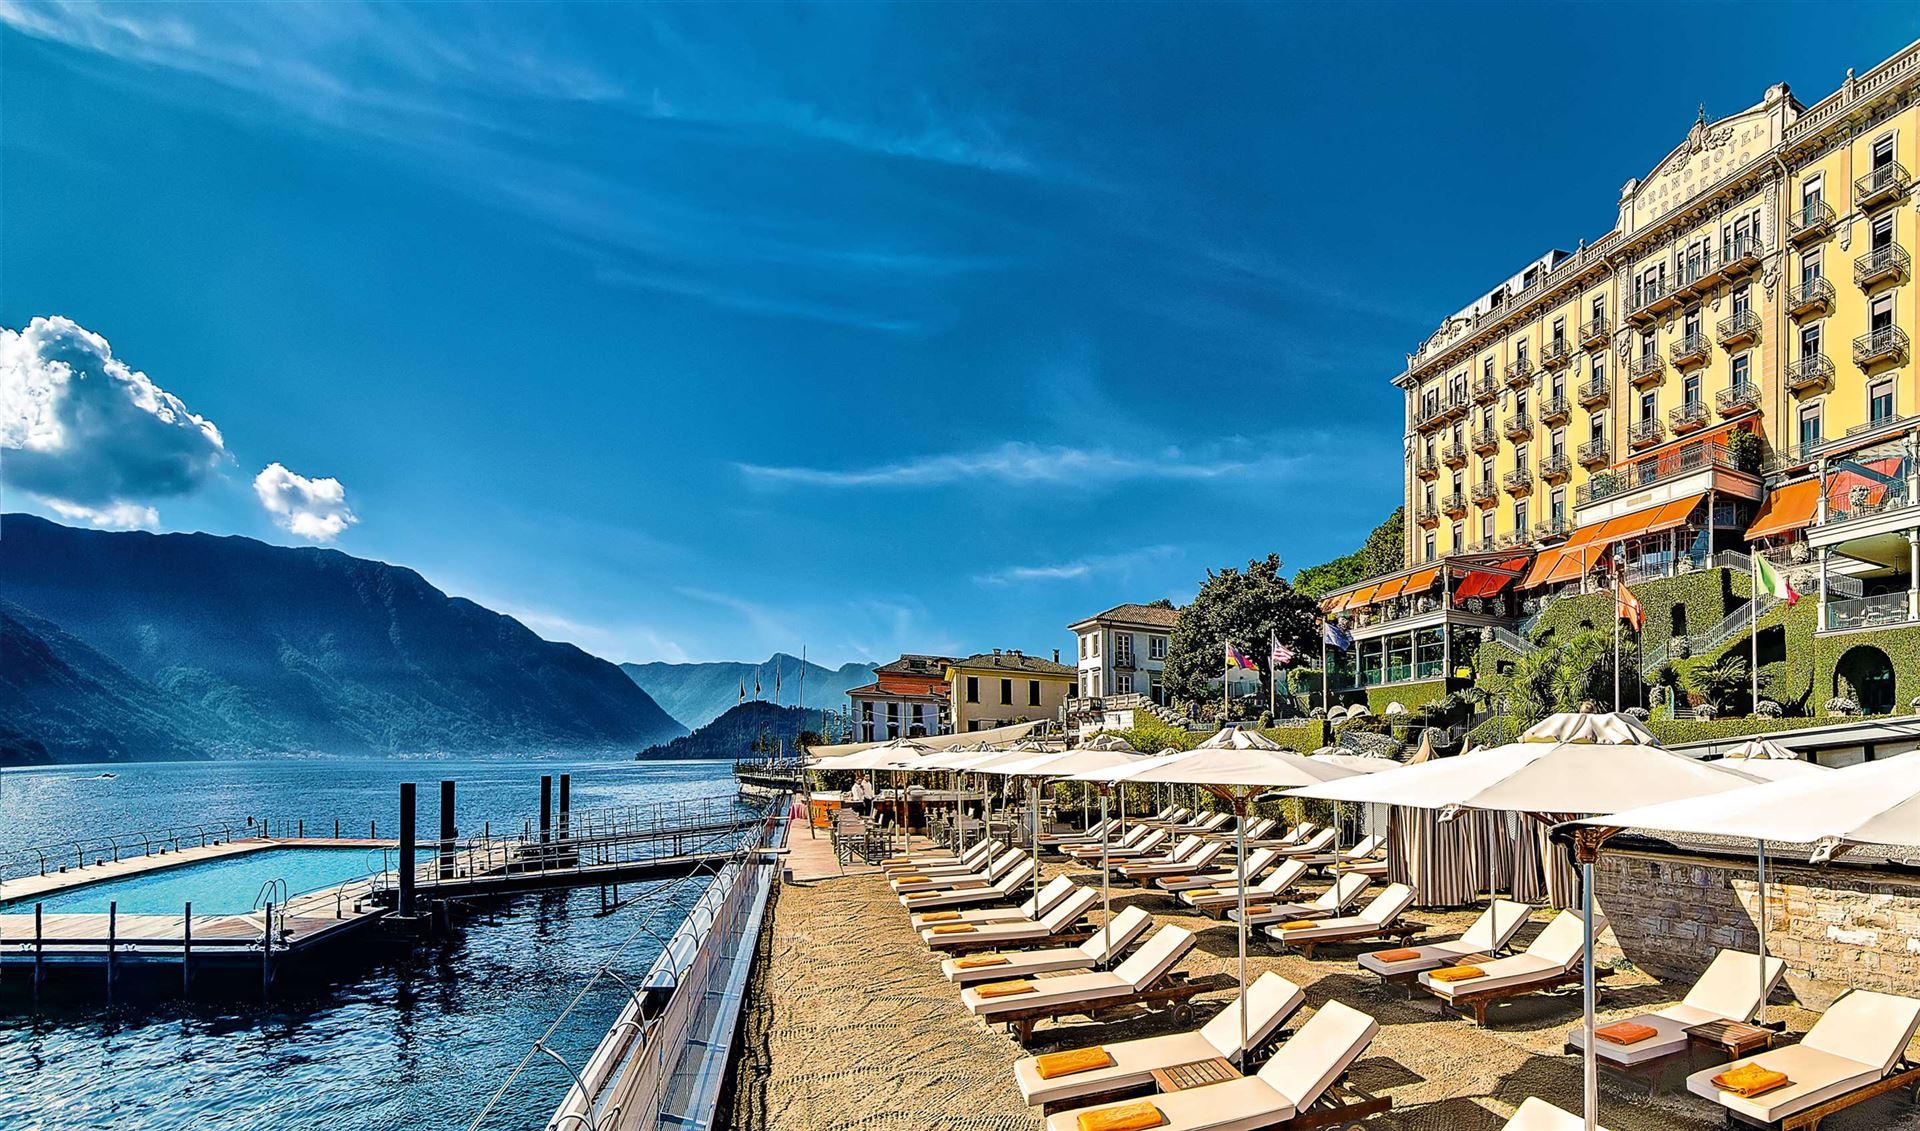 Grand Hotel Tremezzo luxe hotel deals